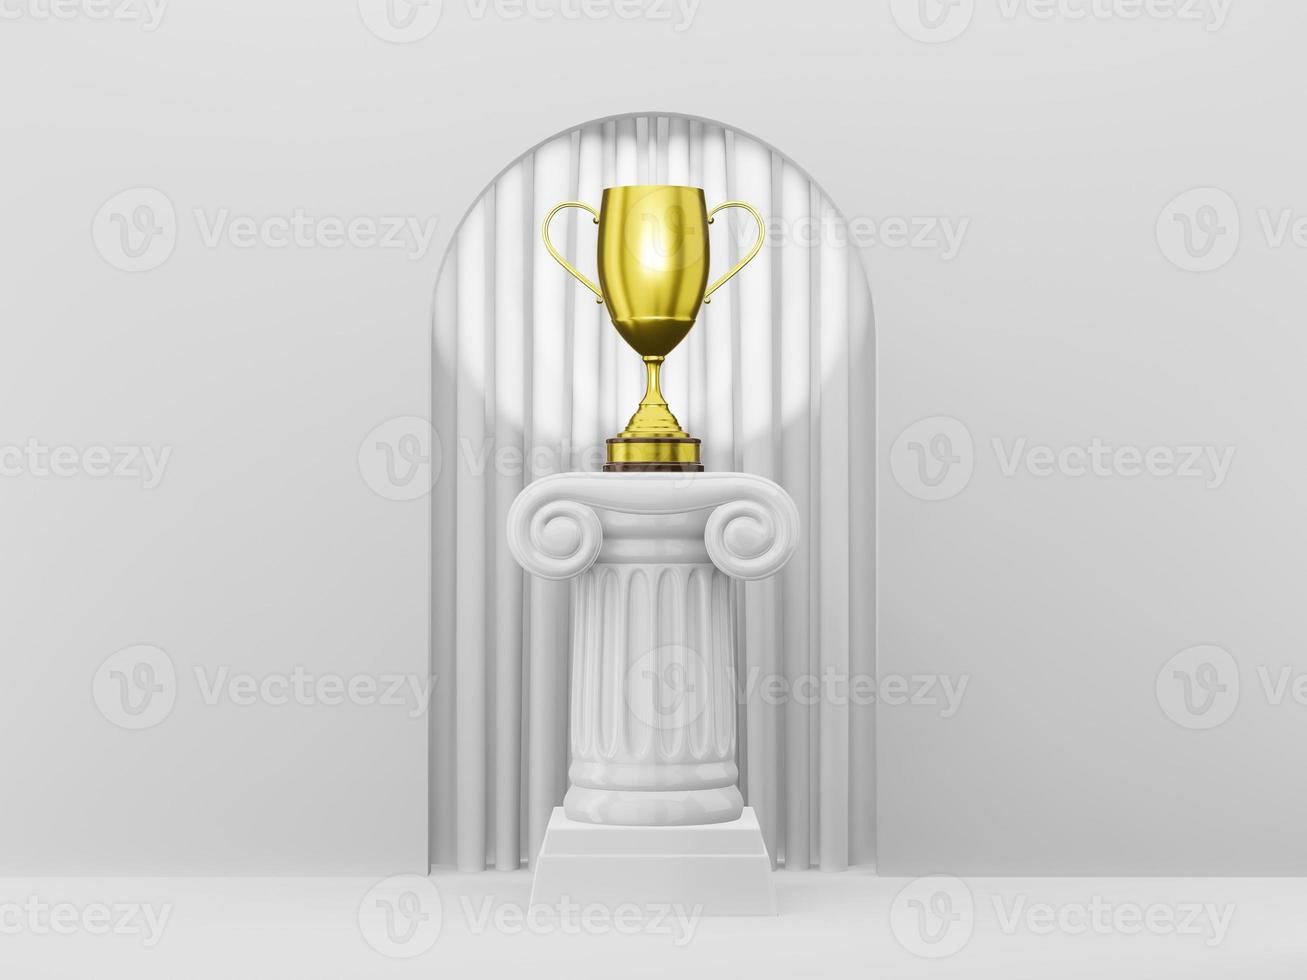 abstracte podiumkolom met een gouden trofee op de witte boog als achtergrond met witte curtian. de overwinningssokkel is een minimalistisch concept. 3D-rendering. foto